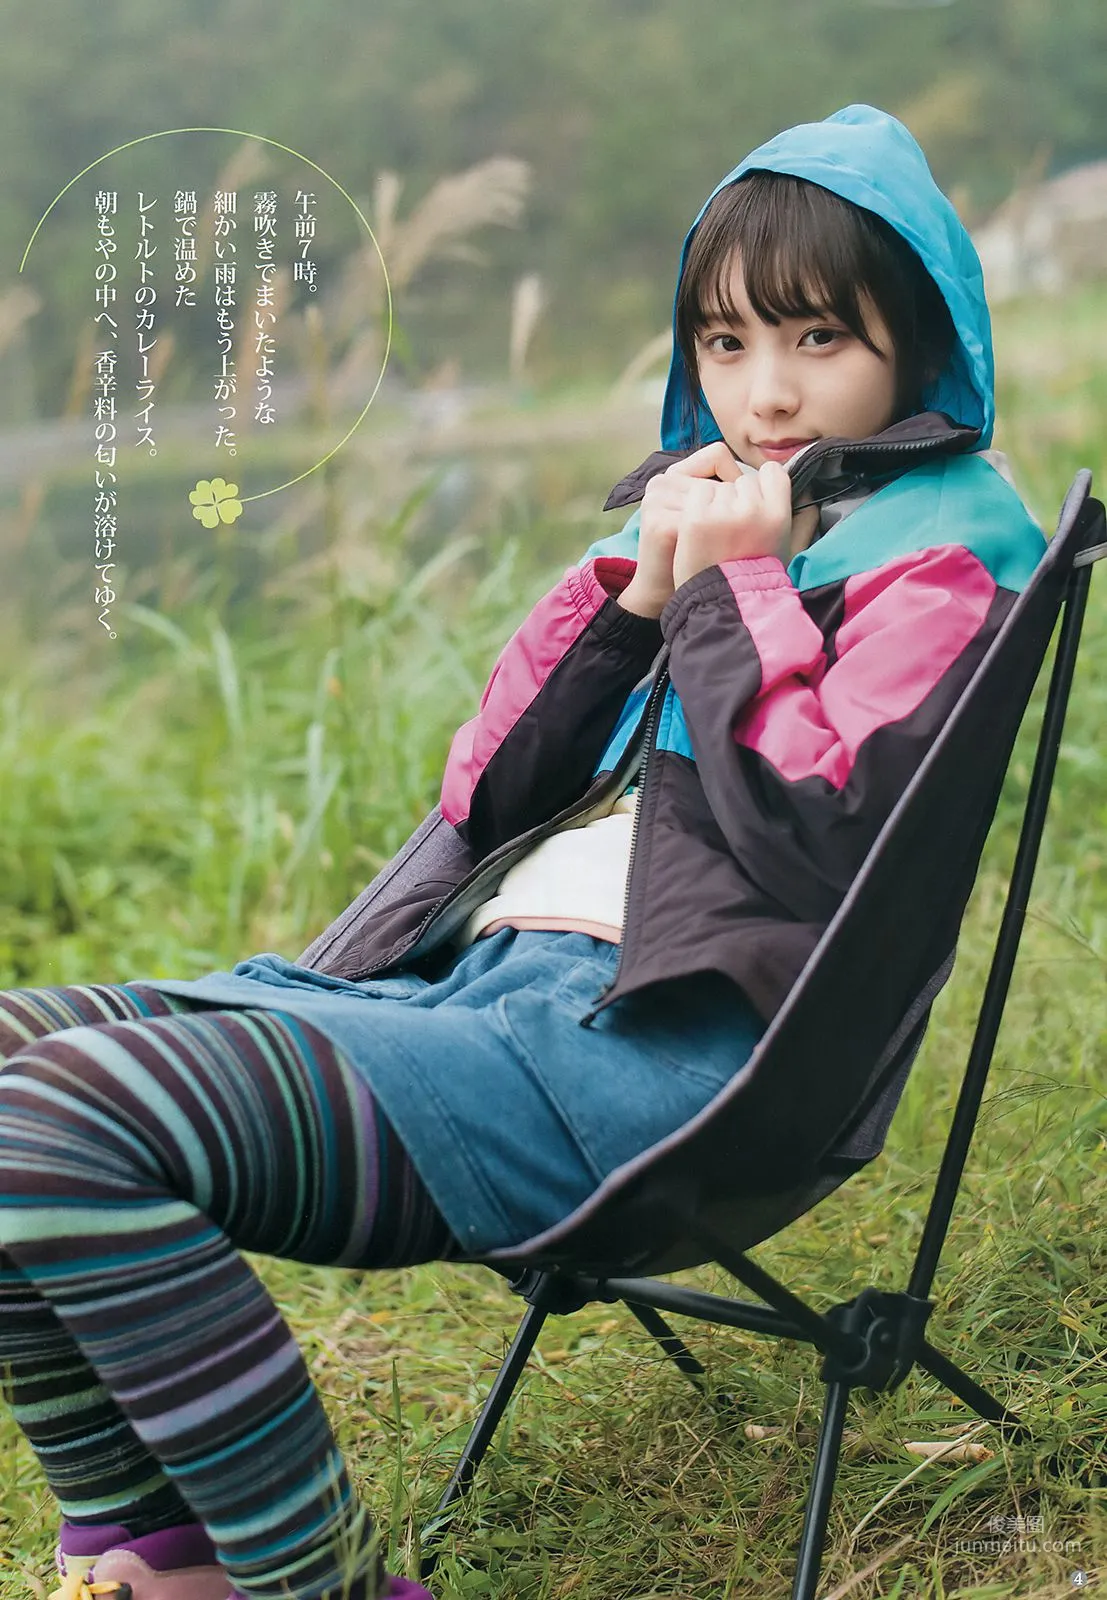 与田祐希 田中えれな 宮﨑優 [Weekly Young Jump] 2018年No.49 写真杂志4